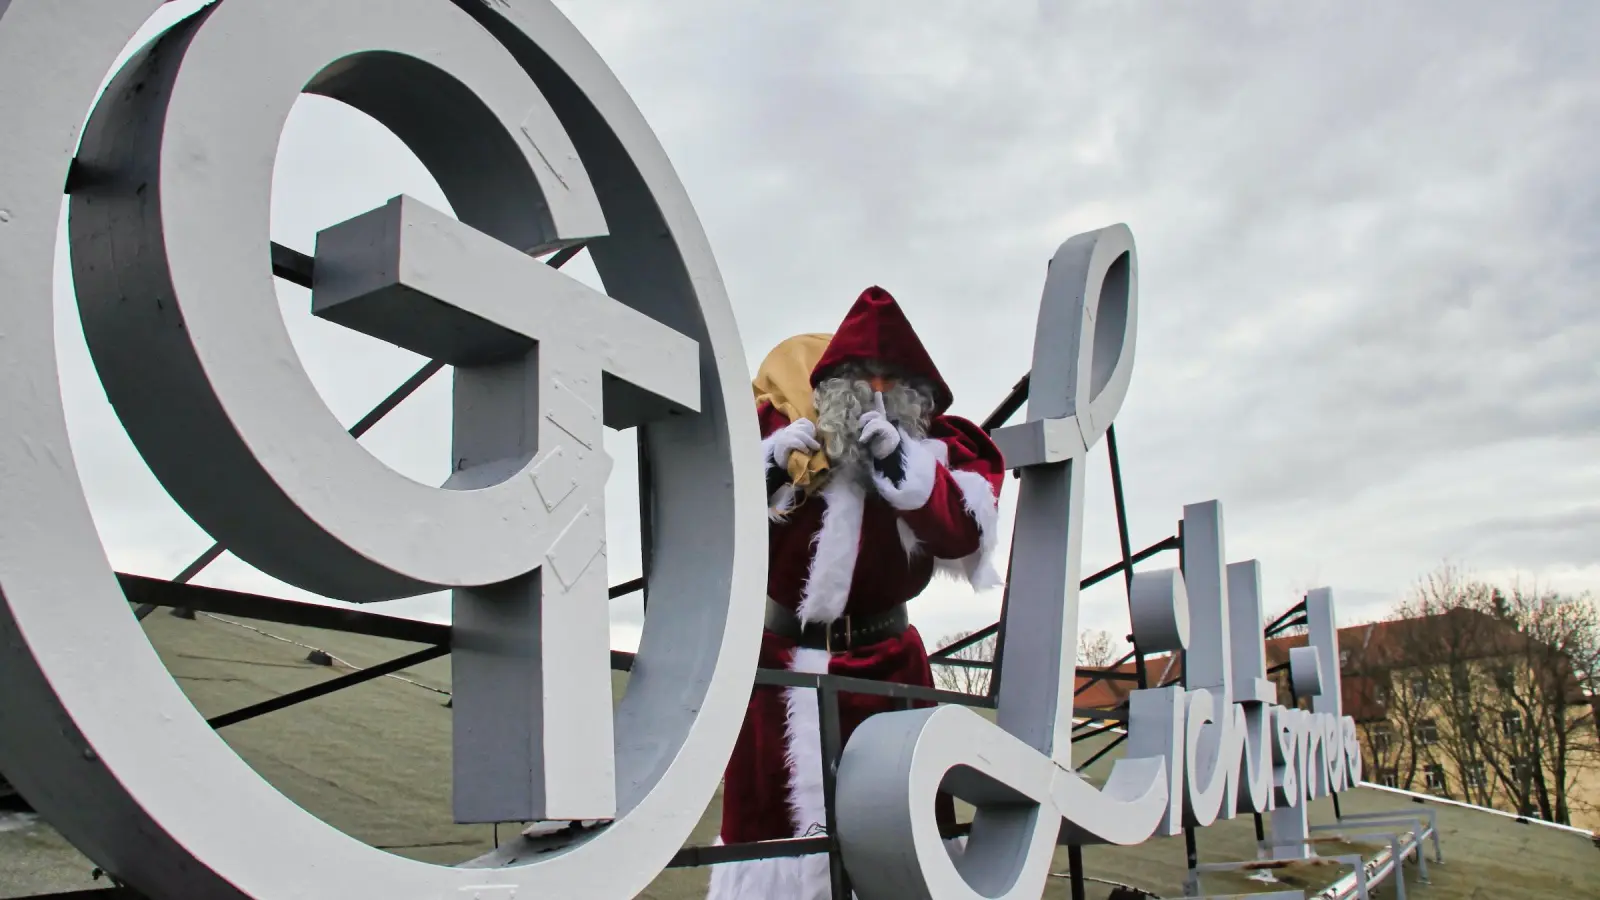 Auf dem Dach des Kinos wurde er bereits gesichtet, der Weihnachtsmann! (Foto: taucha-kompakt.de)